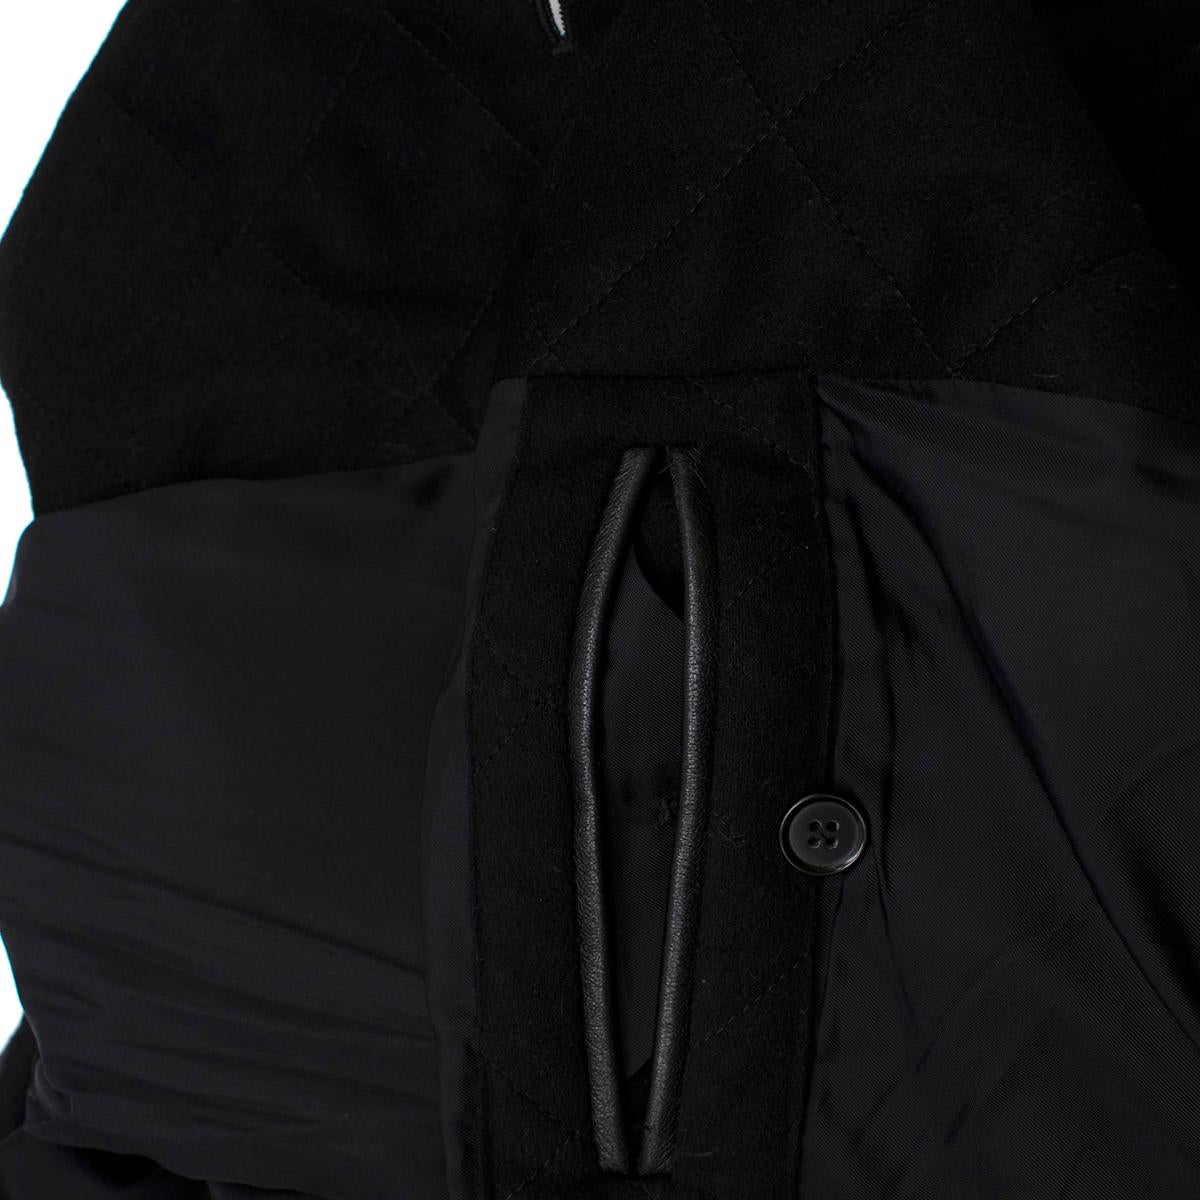 Agnona Black Cashmere Blend Coat - Size L For Sale 3